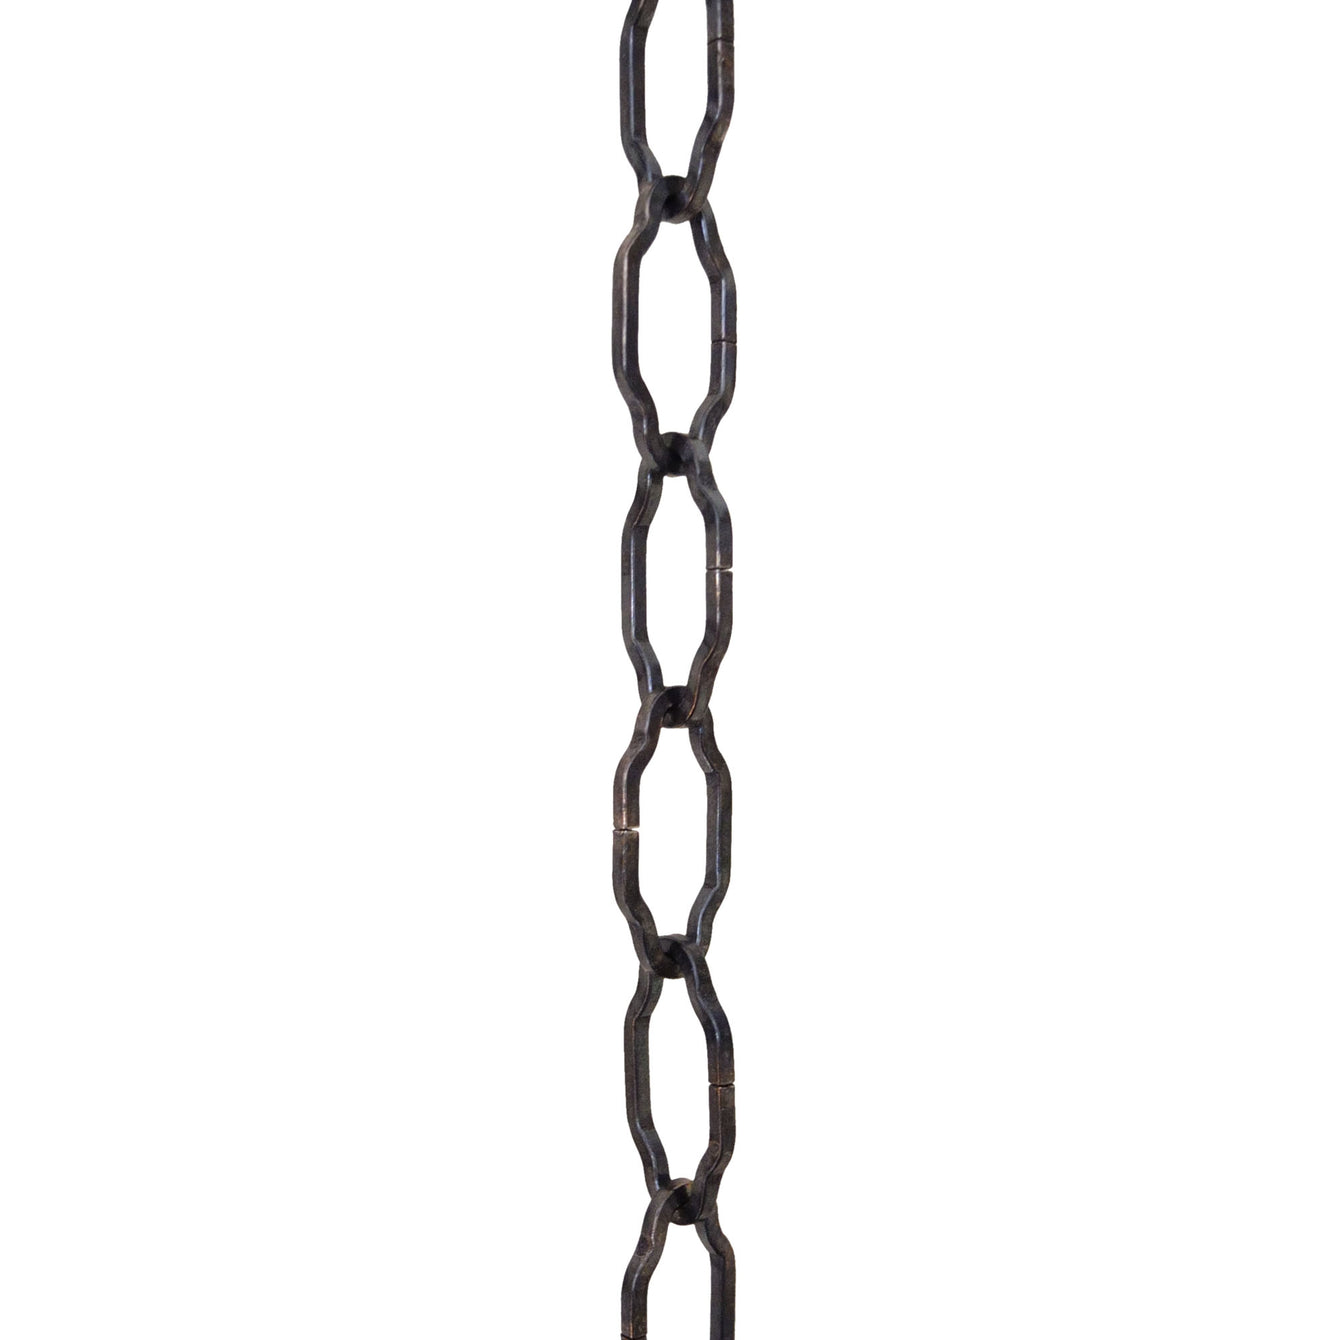 ElekTek Gothic Open Link Chain for Chandelier & Lighting 29mm x 15mm Per Linear Metre - Buy It Better 